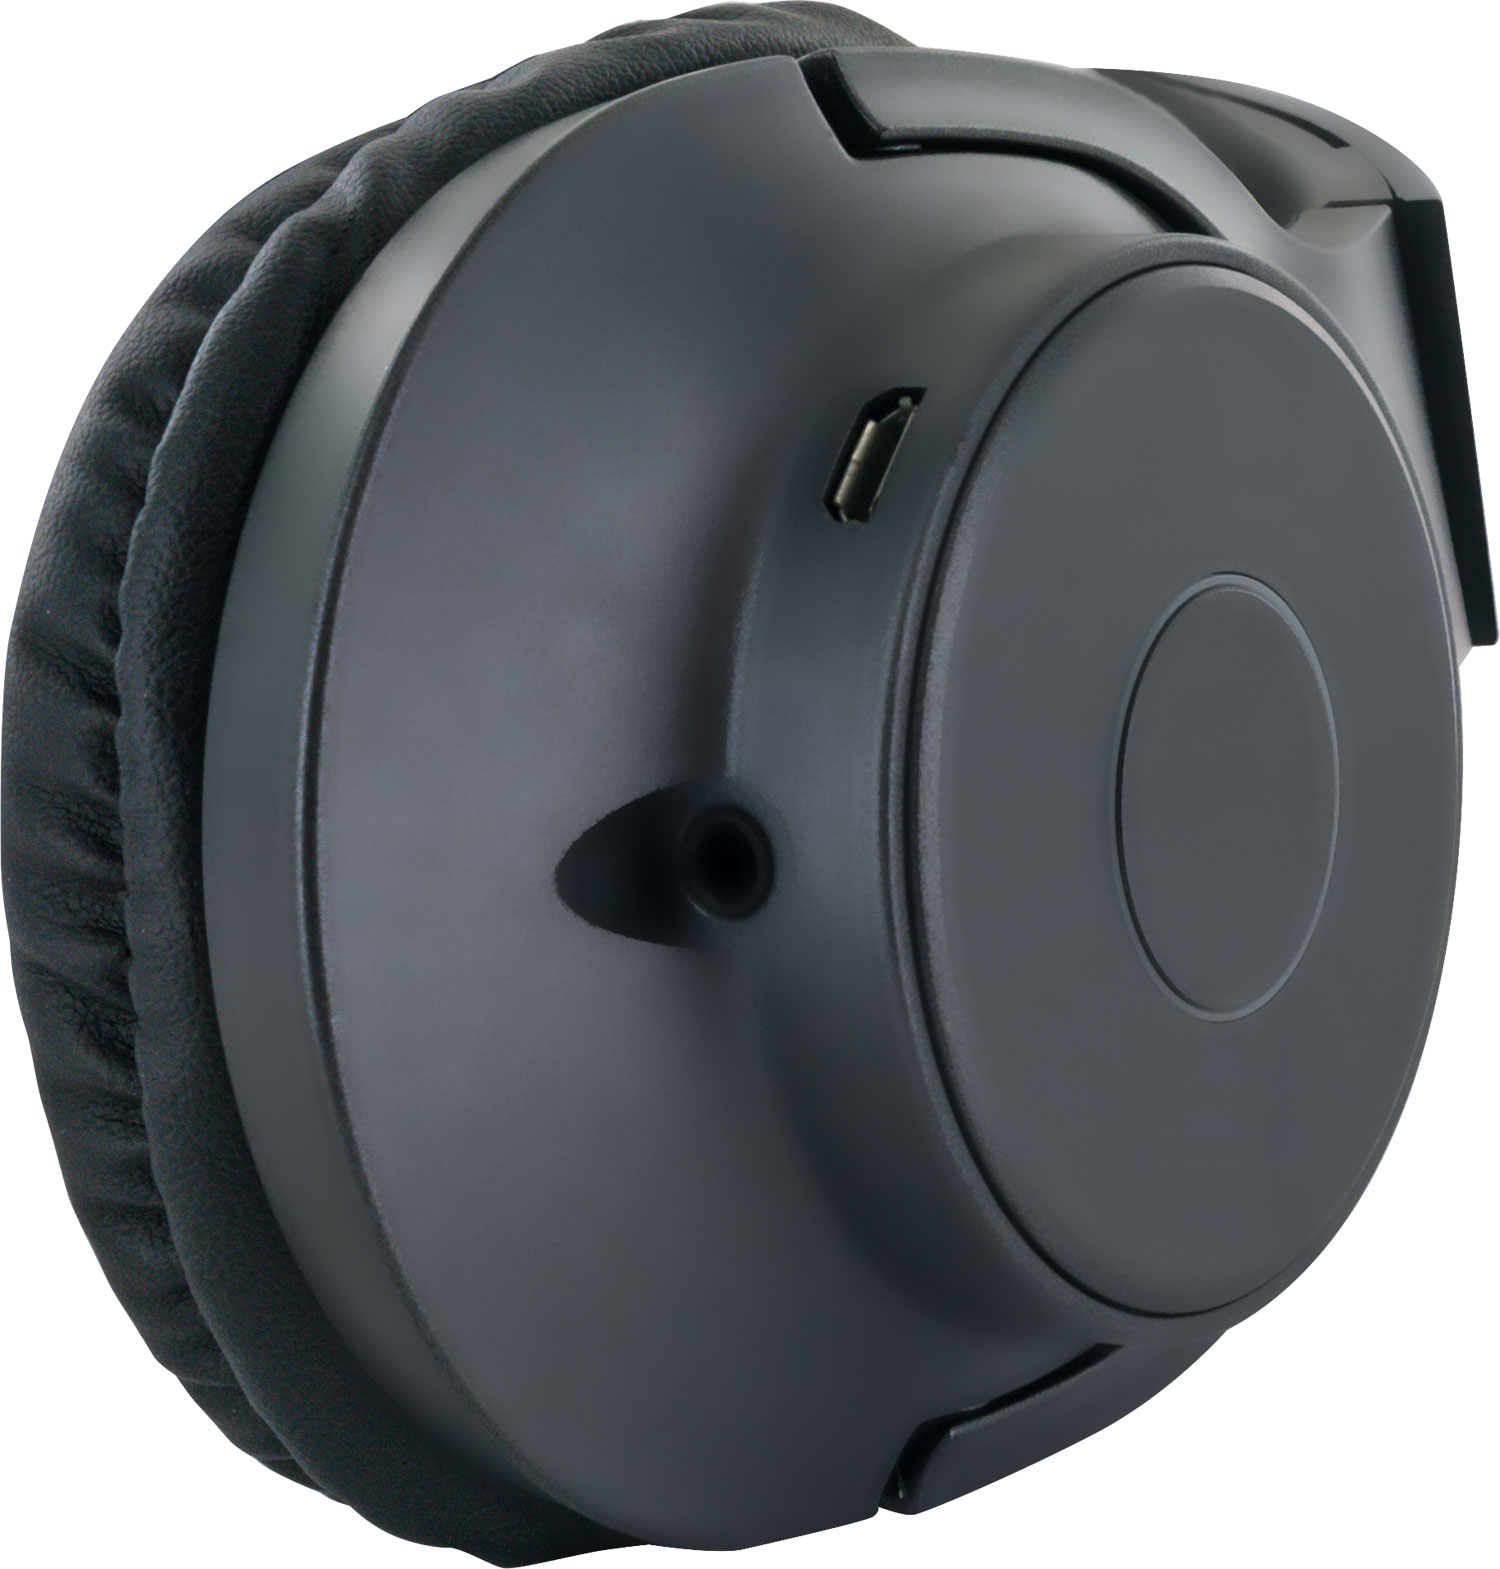 Bluetooth -KH220BT On-ear Schwarz 513-, Bügelkopfhörer SCHWAIGER Bluetooth®